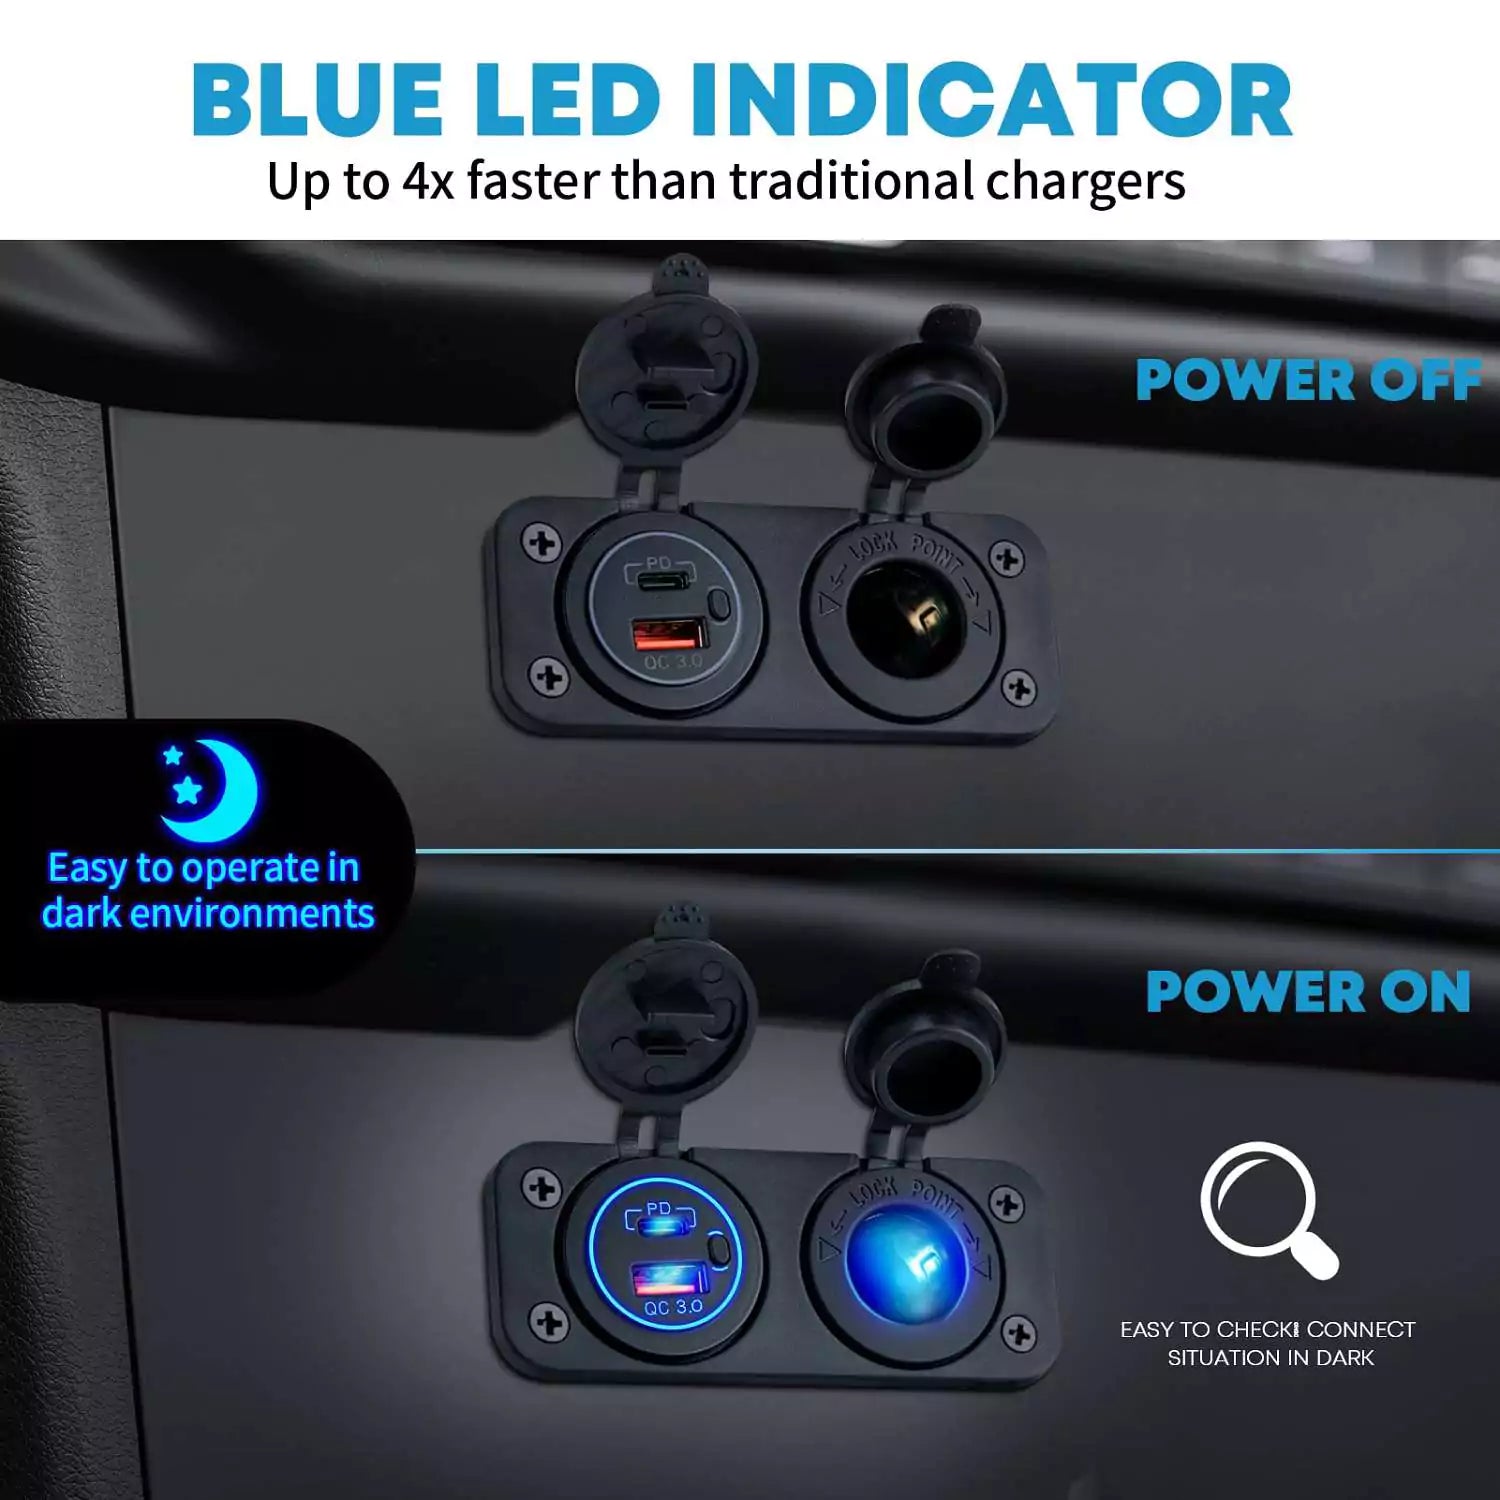 Blue LED indicator cigarette lighter socket to plug